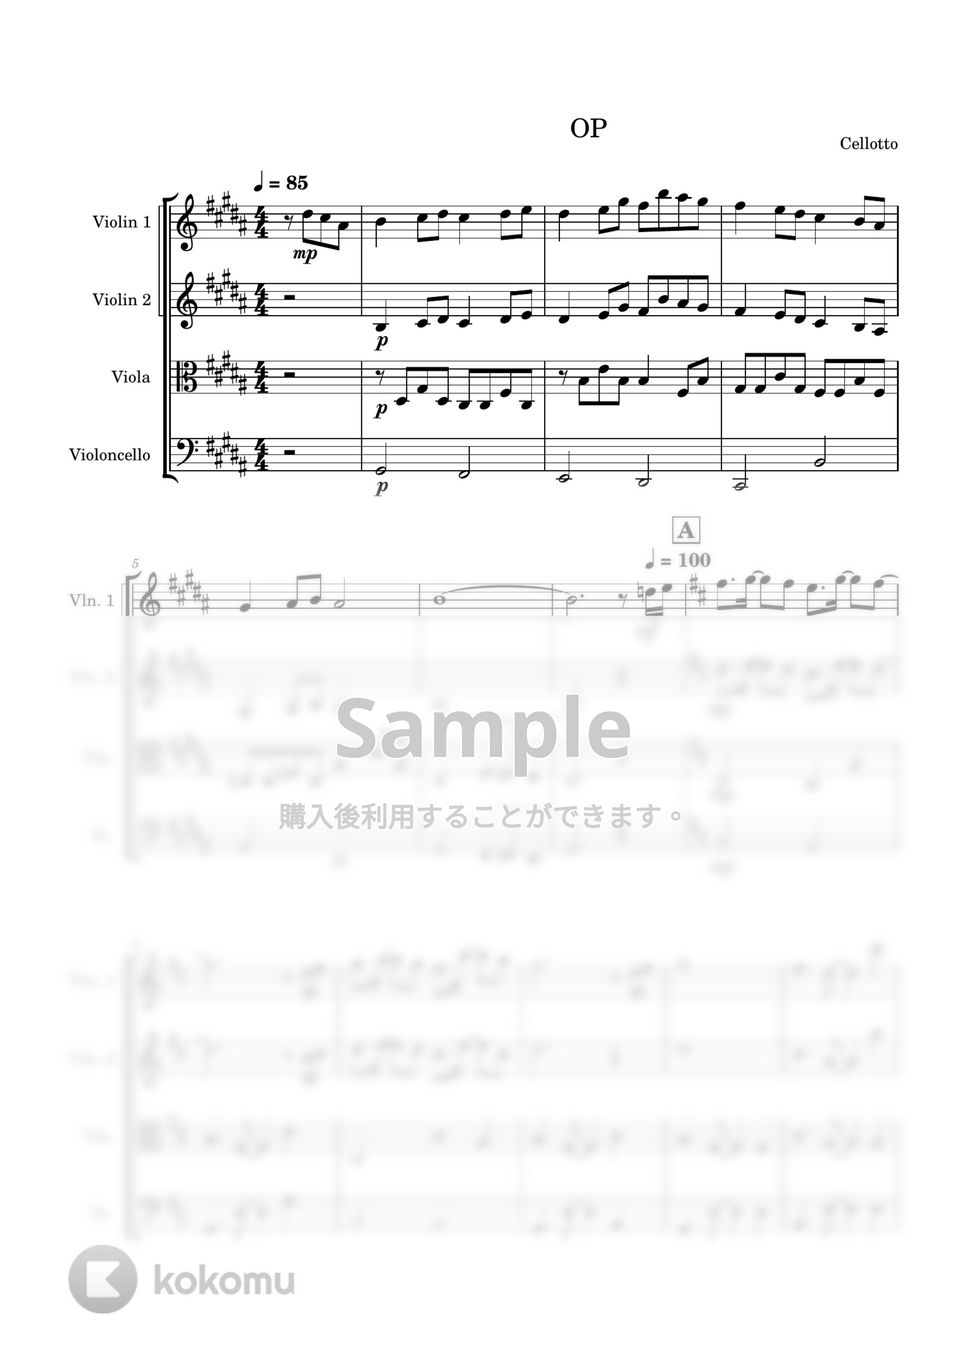 Janne Da Arc - 月光花 (弦楽四重奏) by Cellotto